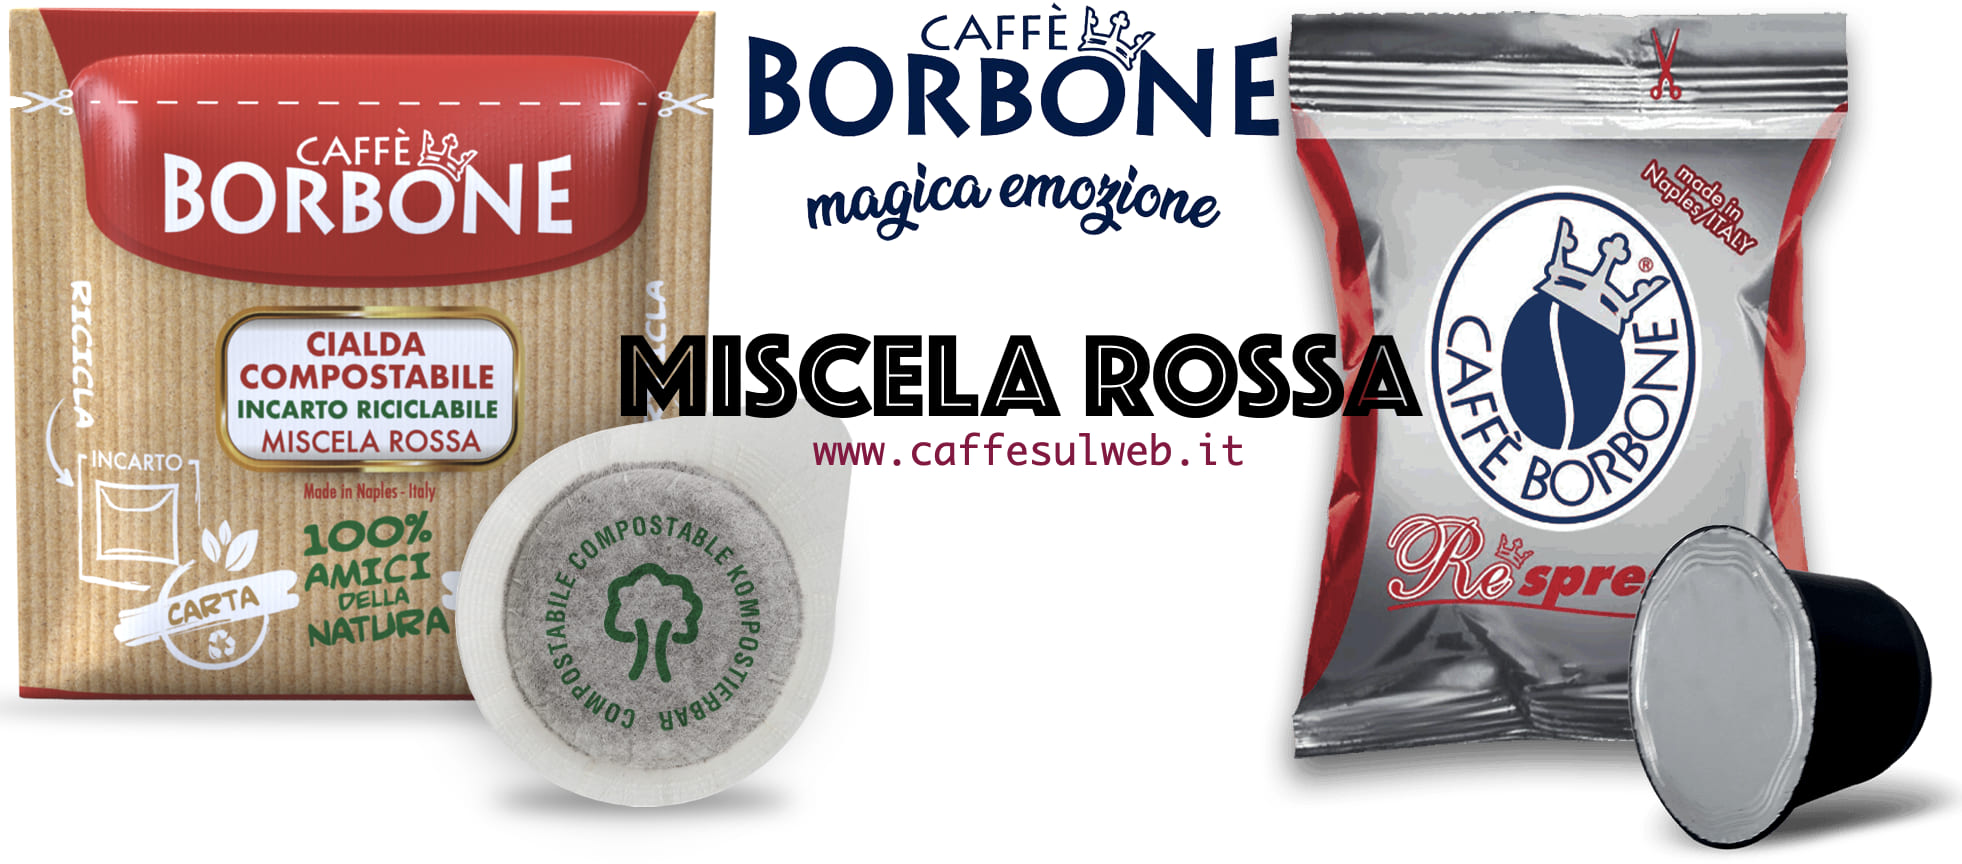 Caffe Borbone Miscela Rossa Recensioni Opinione Prezzo